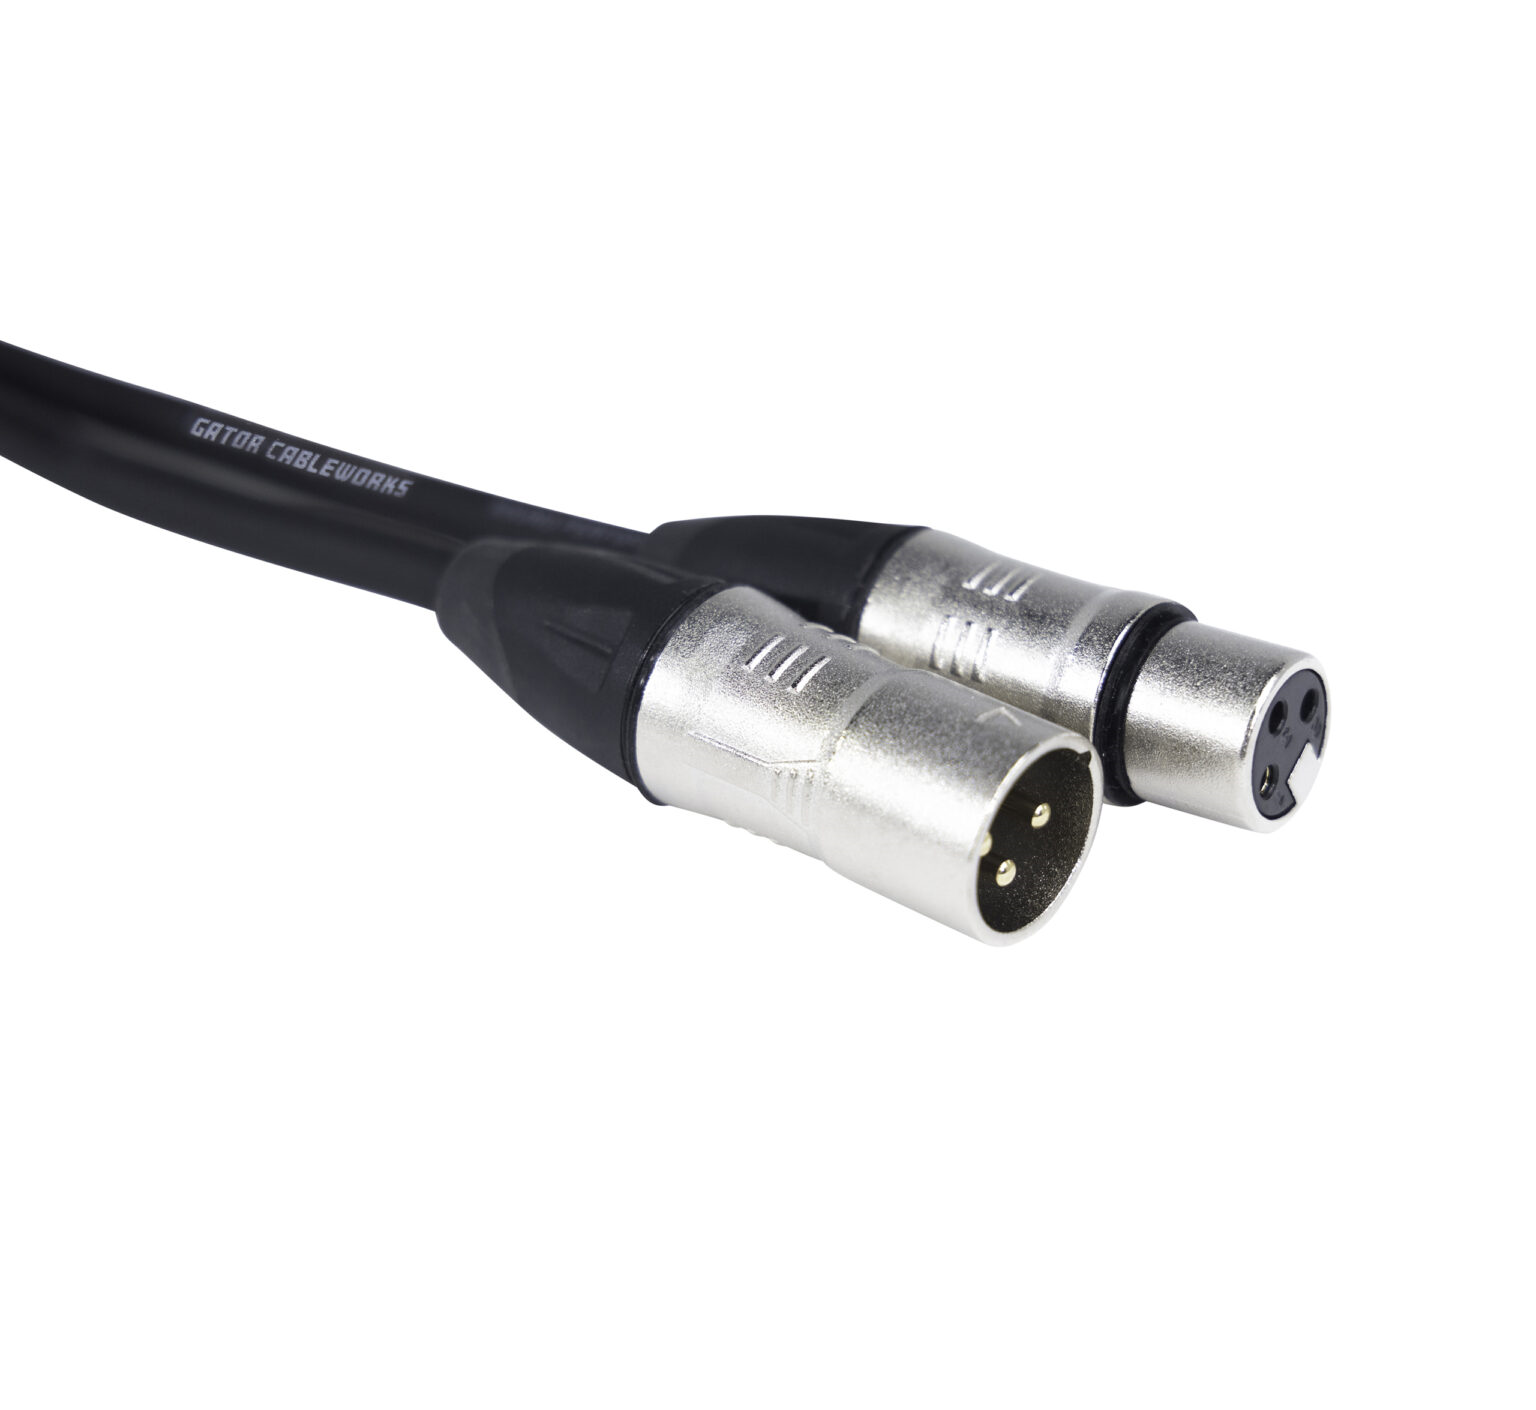 GCWB-XLR-05 5 Foot XLR Microphone Cable